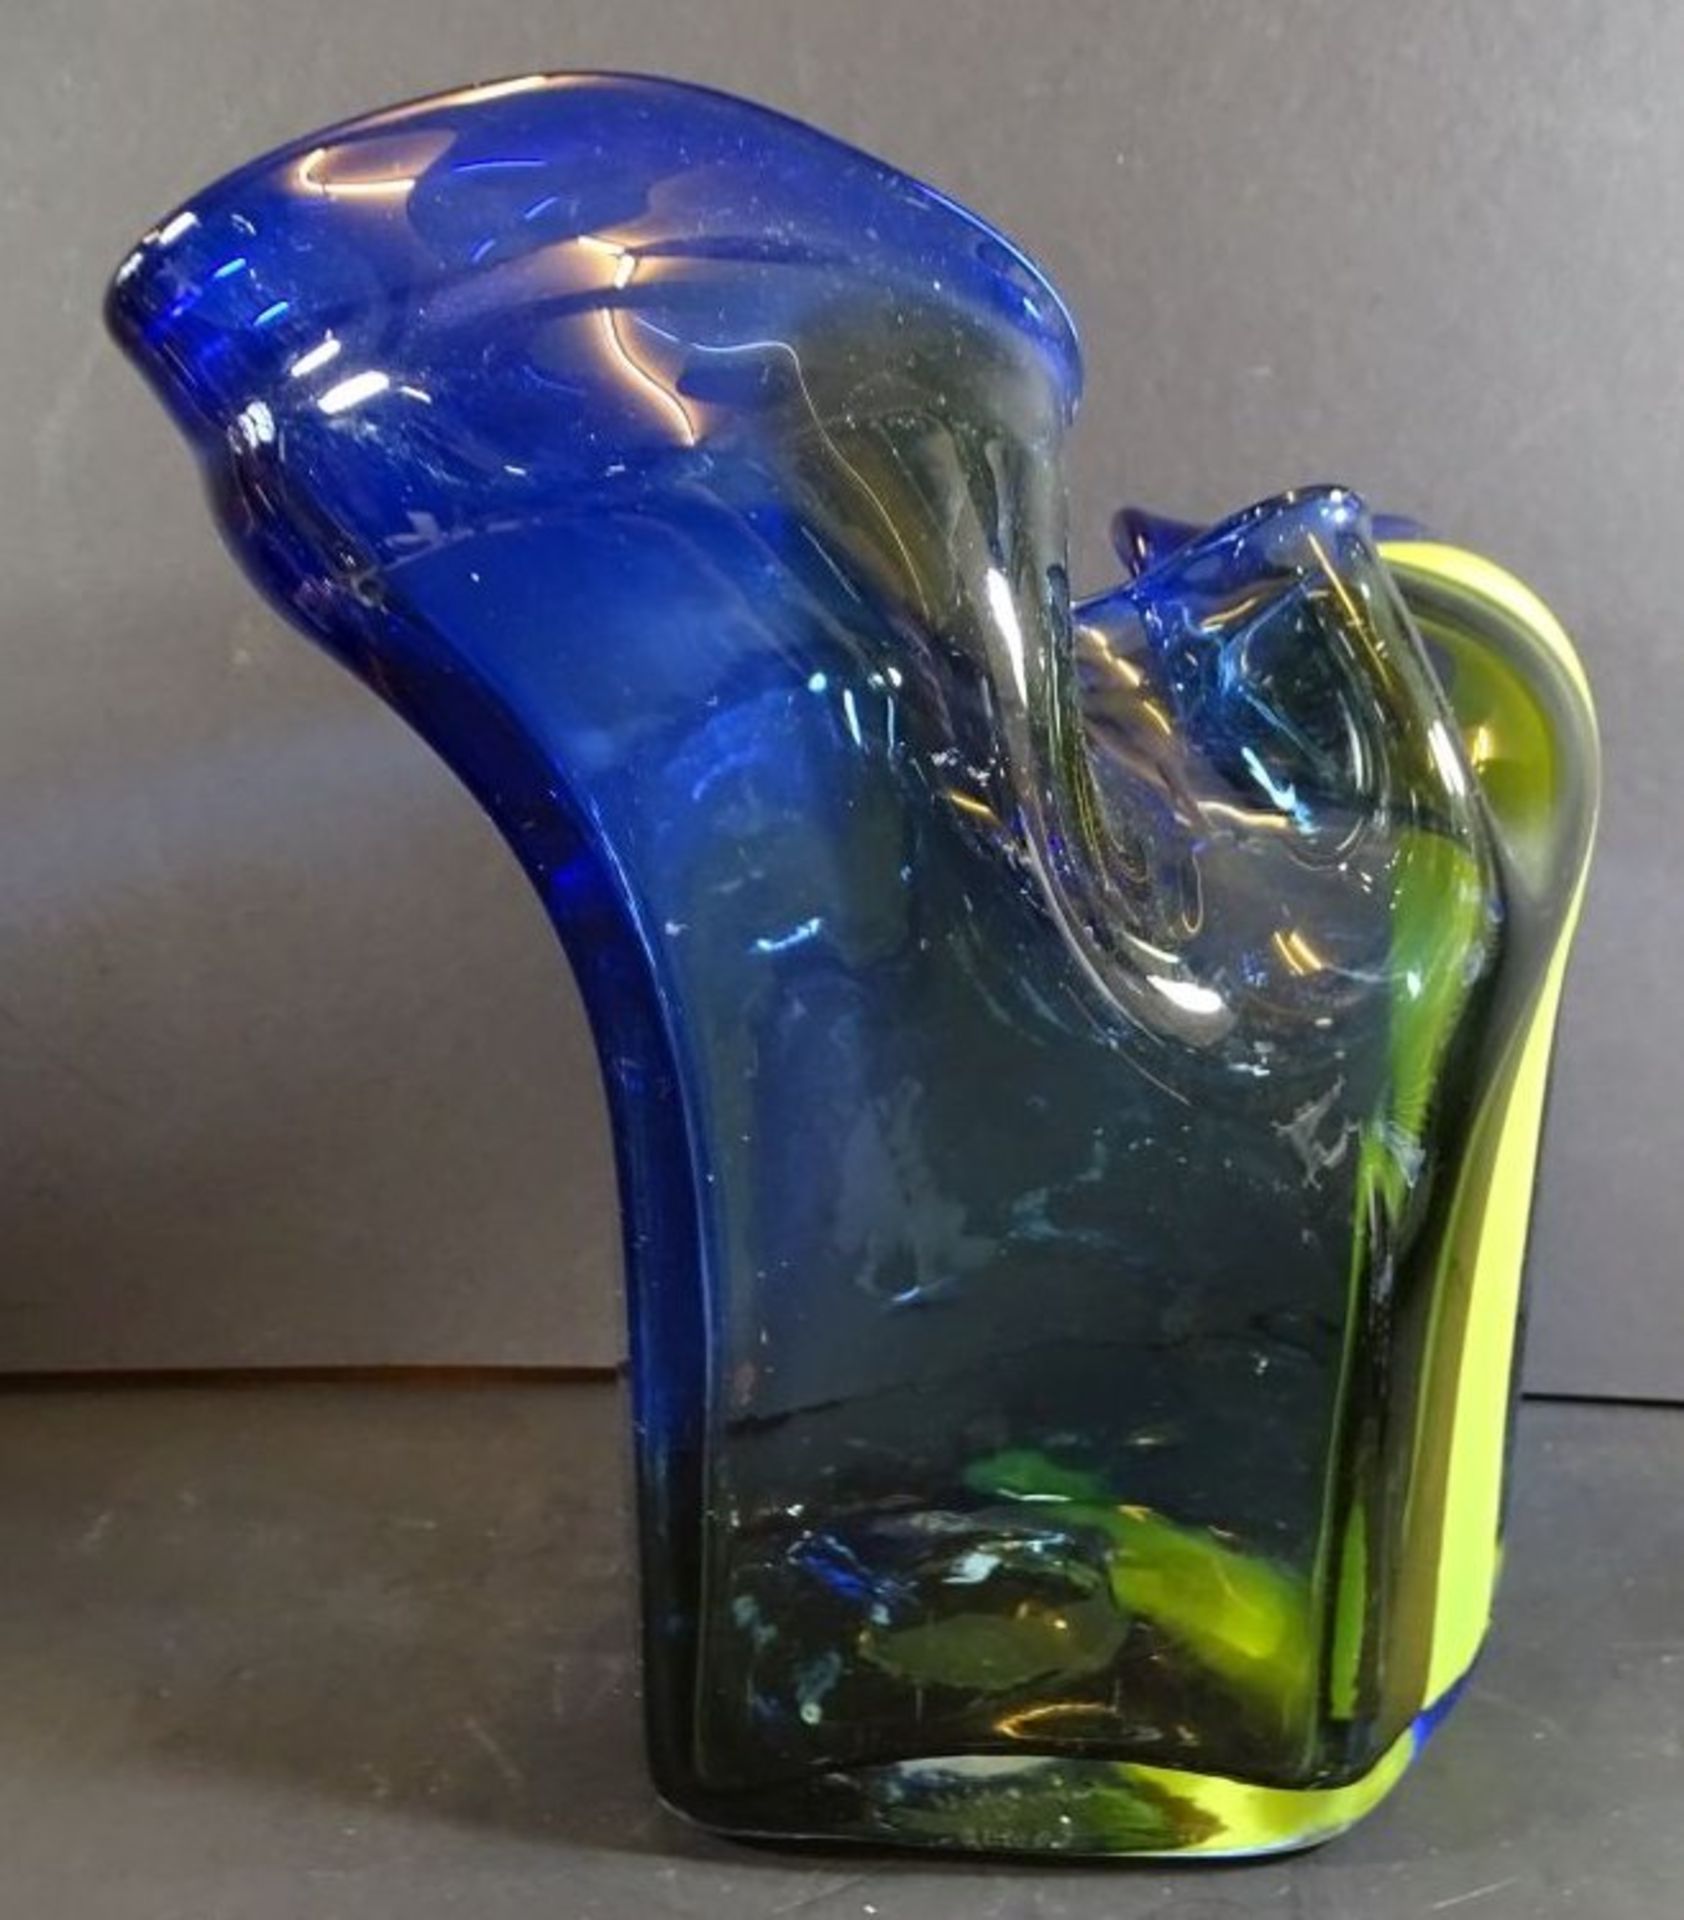 W. Heesen - Glasfabriek Leerdam - schwere Vase , signiert, Nummer, H-25 cm, D-27 cm,  ca. 3 kg. - Bild 4 aus 7